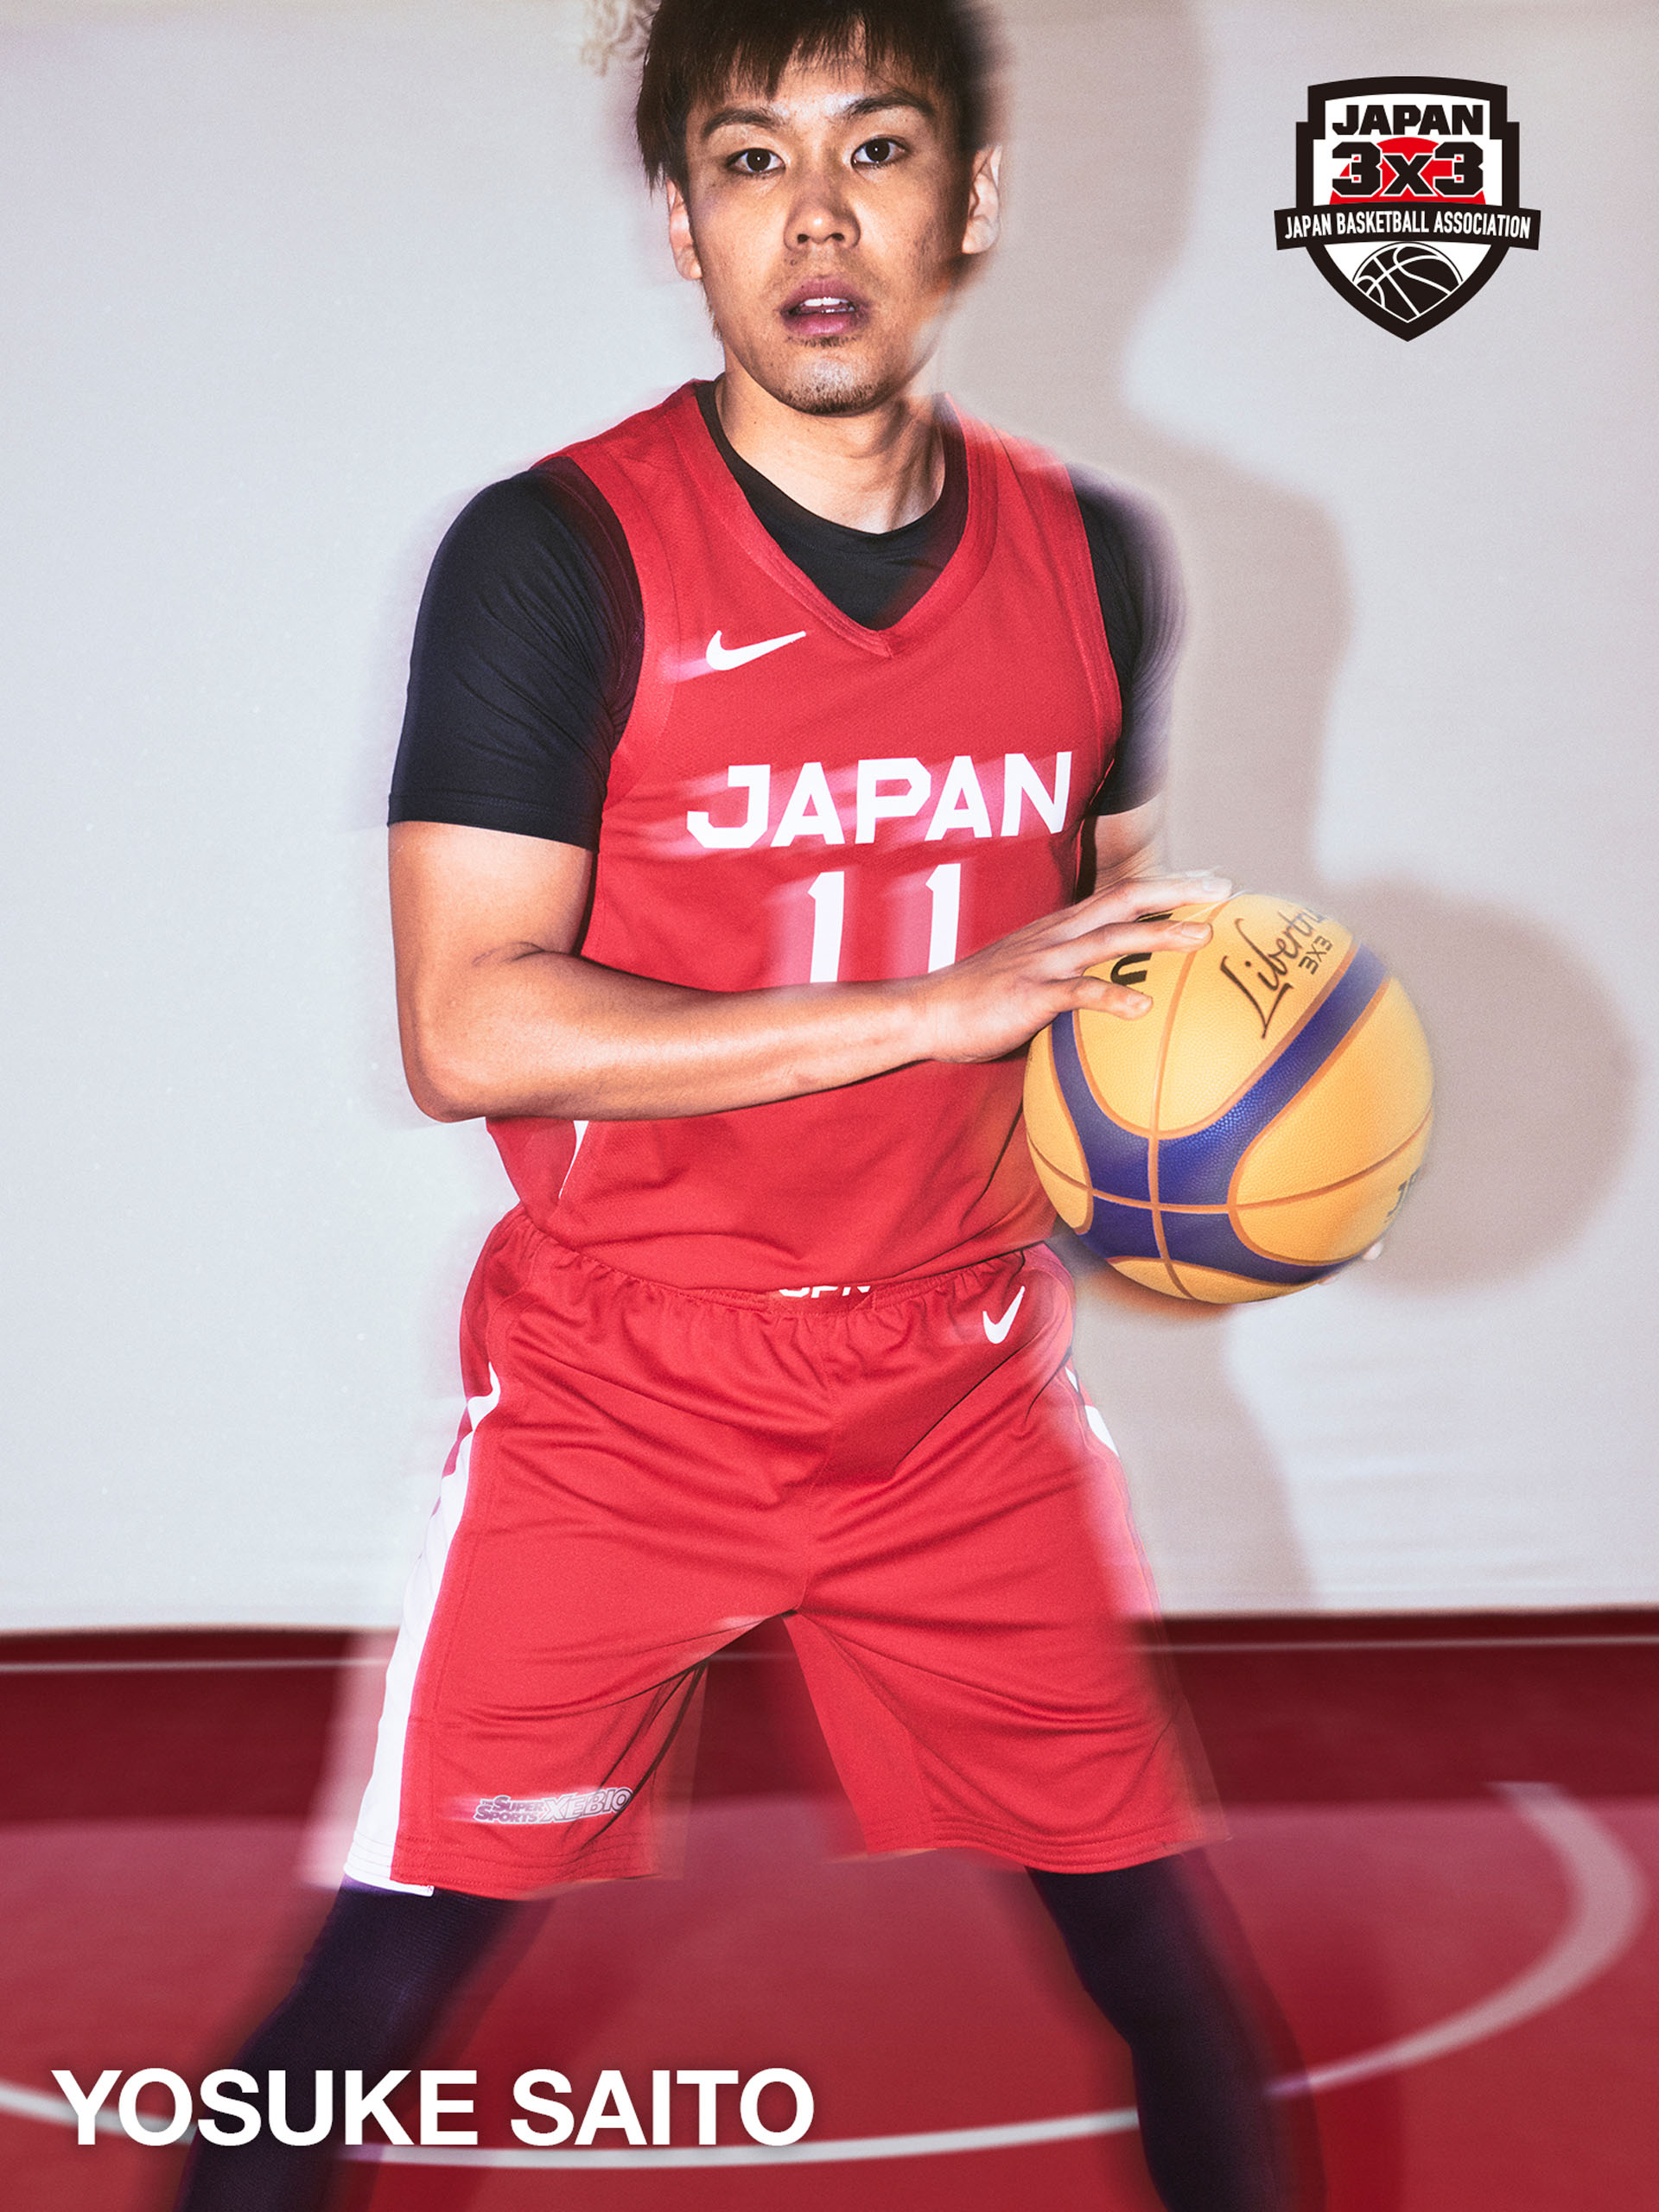 日本バスケットボール発展のためにナイキとjbaがパートナーシップを締結 Fly Basketball Culture Magazine バスケットボール ファッション カルチャー マガジン